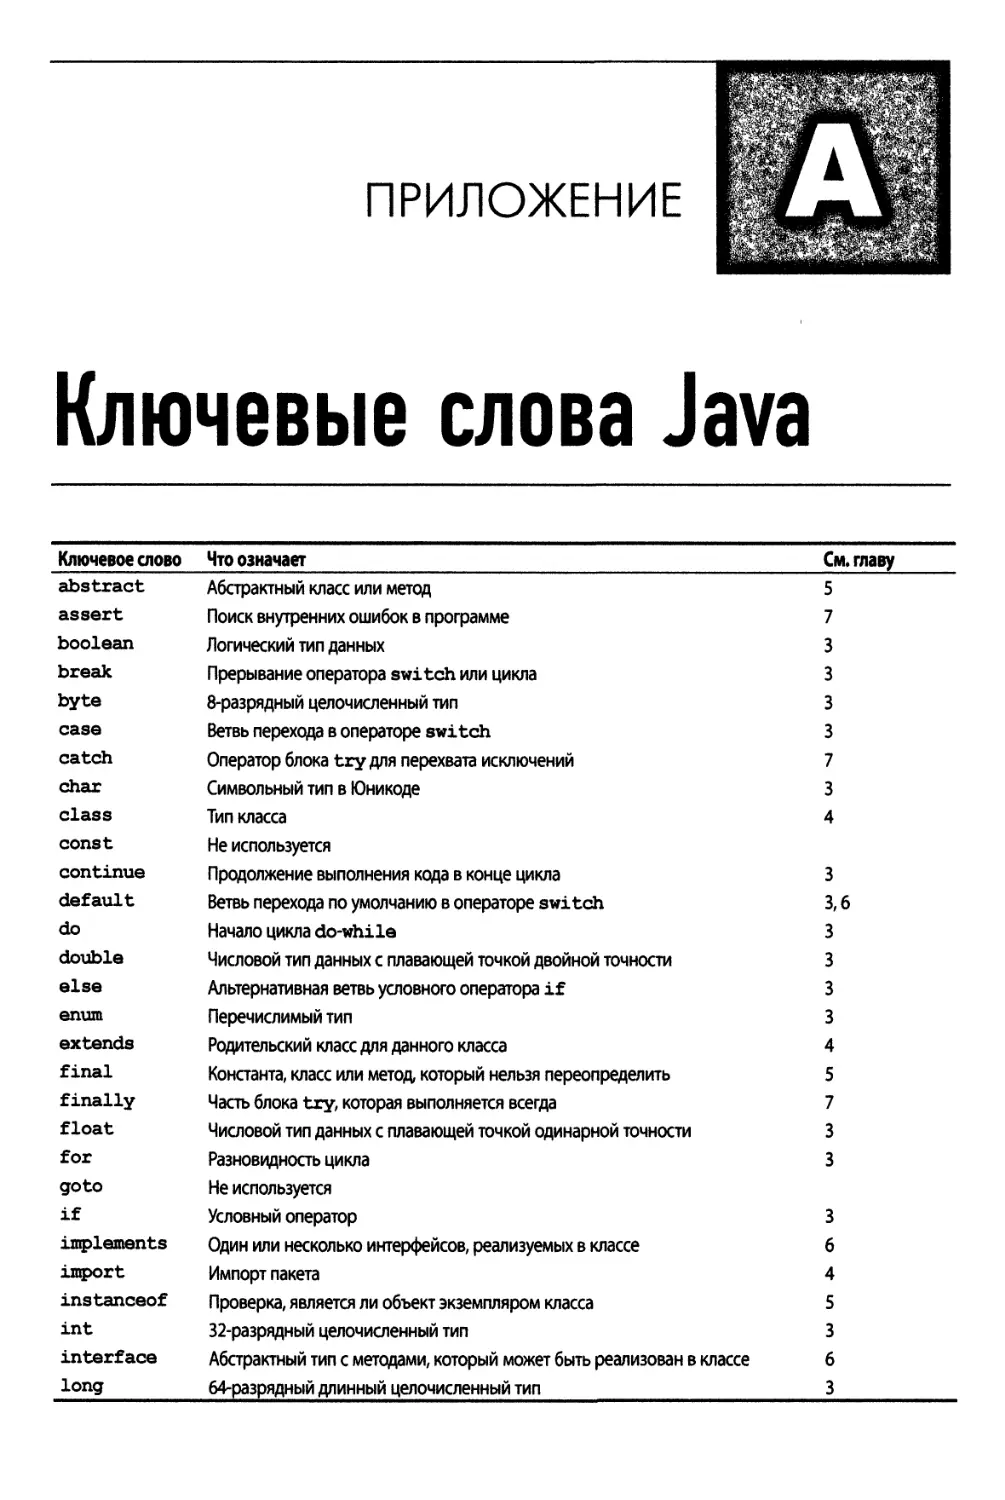 Приложение А. Ключевые слова Java